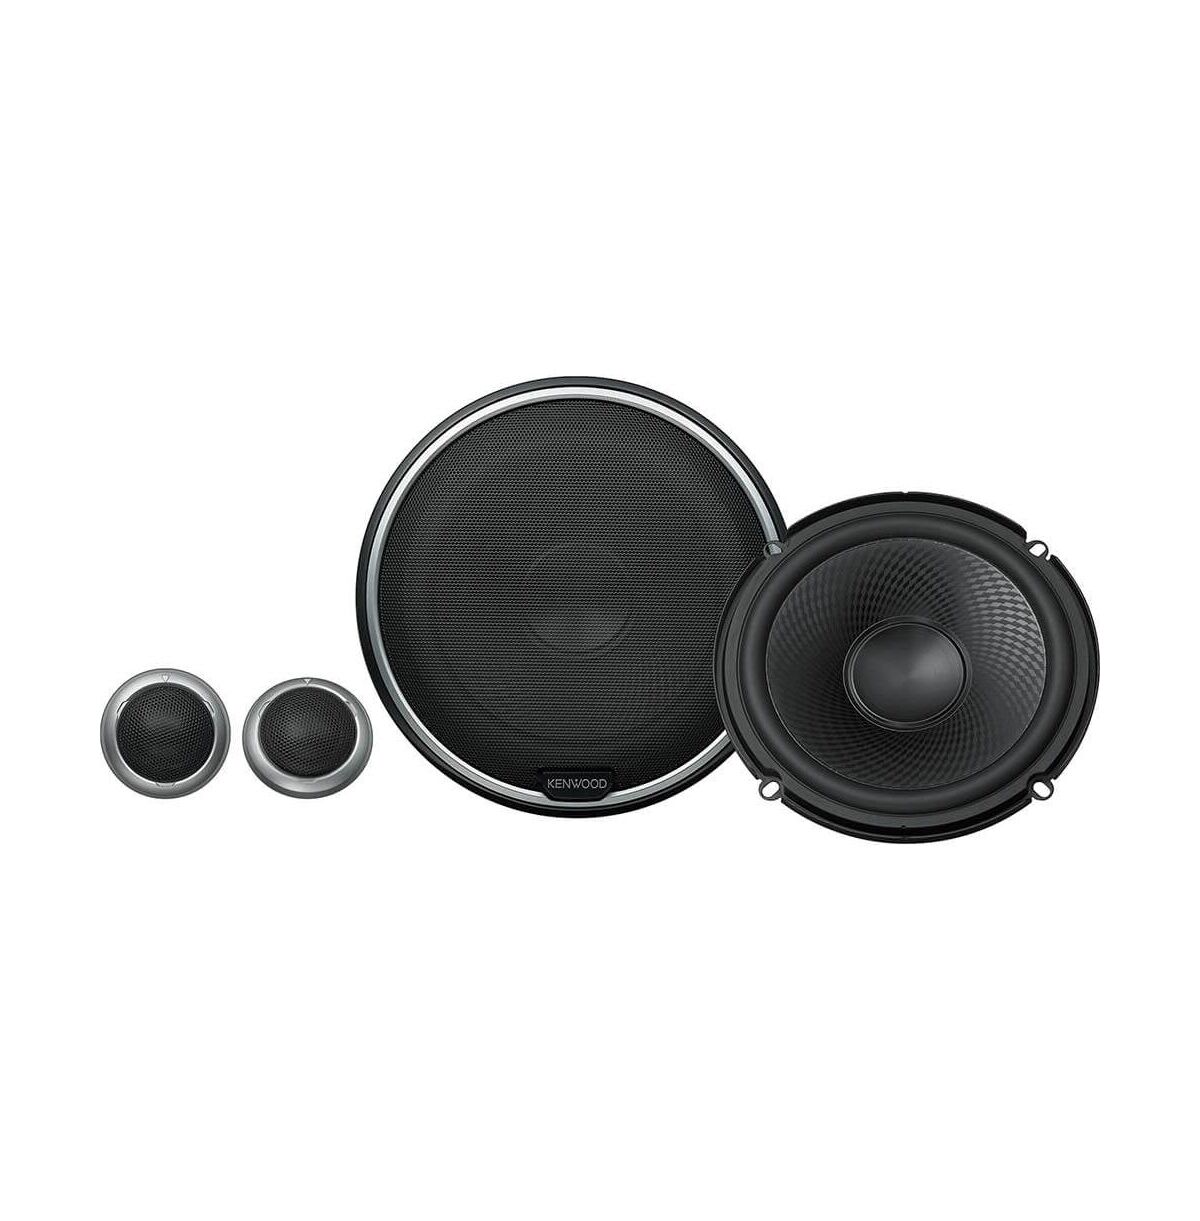 Kenwood 6.5 inch Component Speaker System - Black